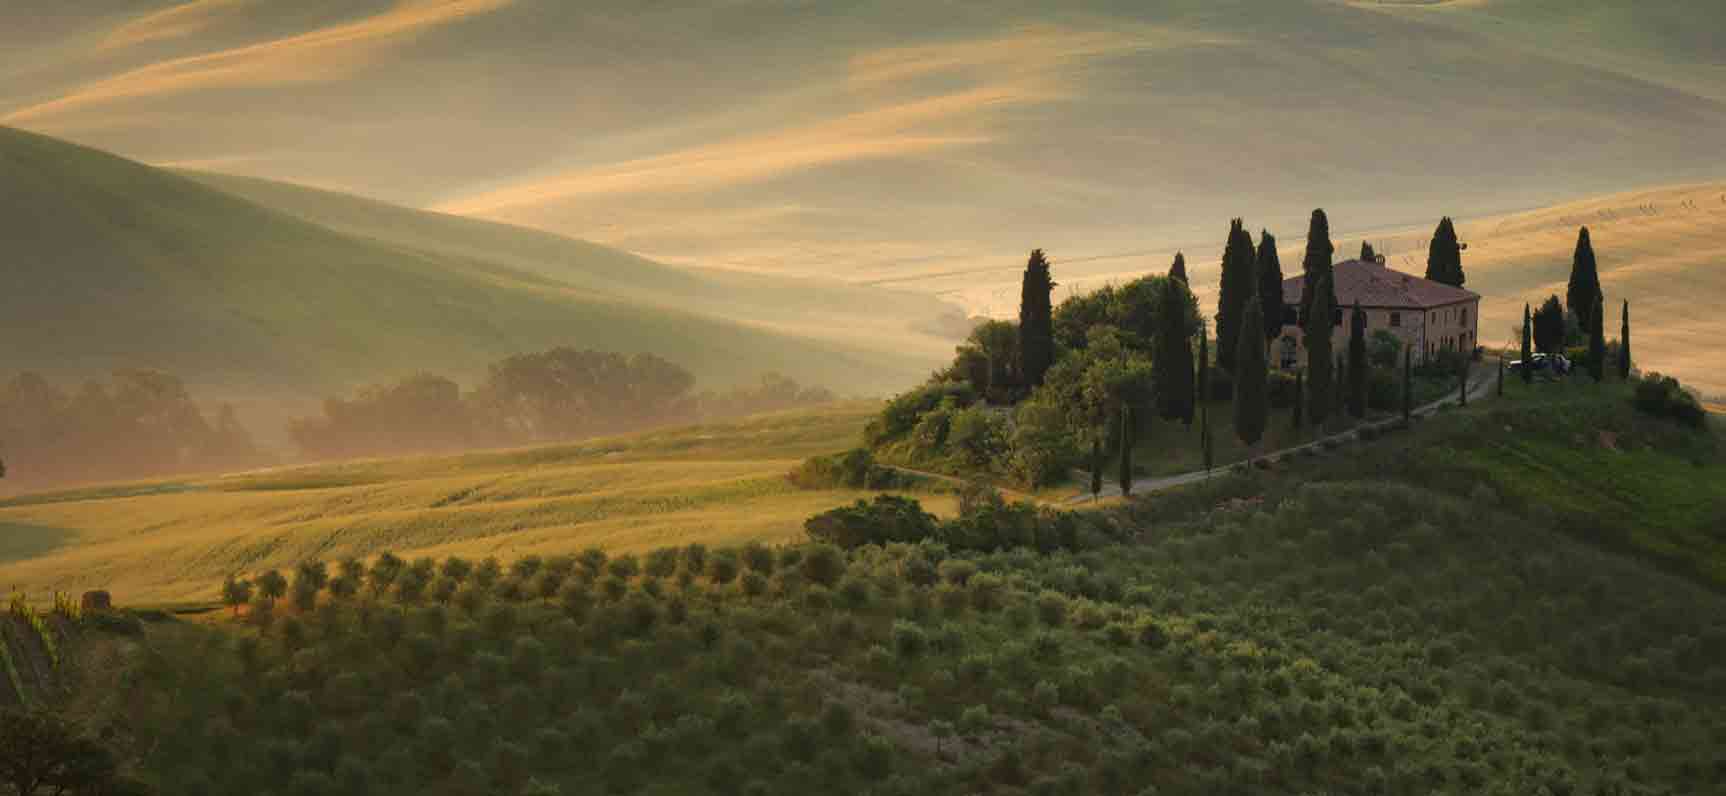 Toskanisches Olivenöl: Der Ursprung der Qualität